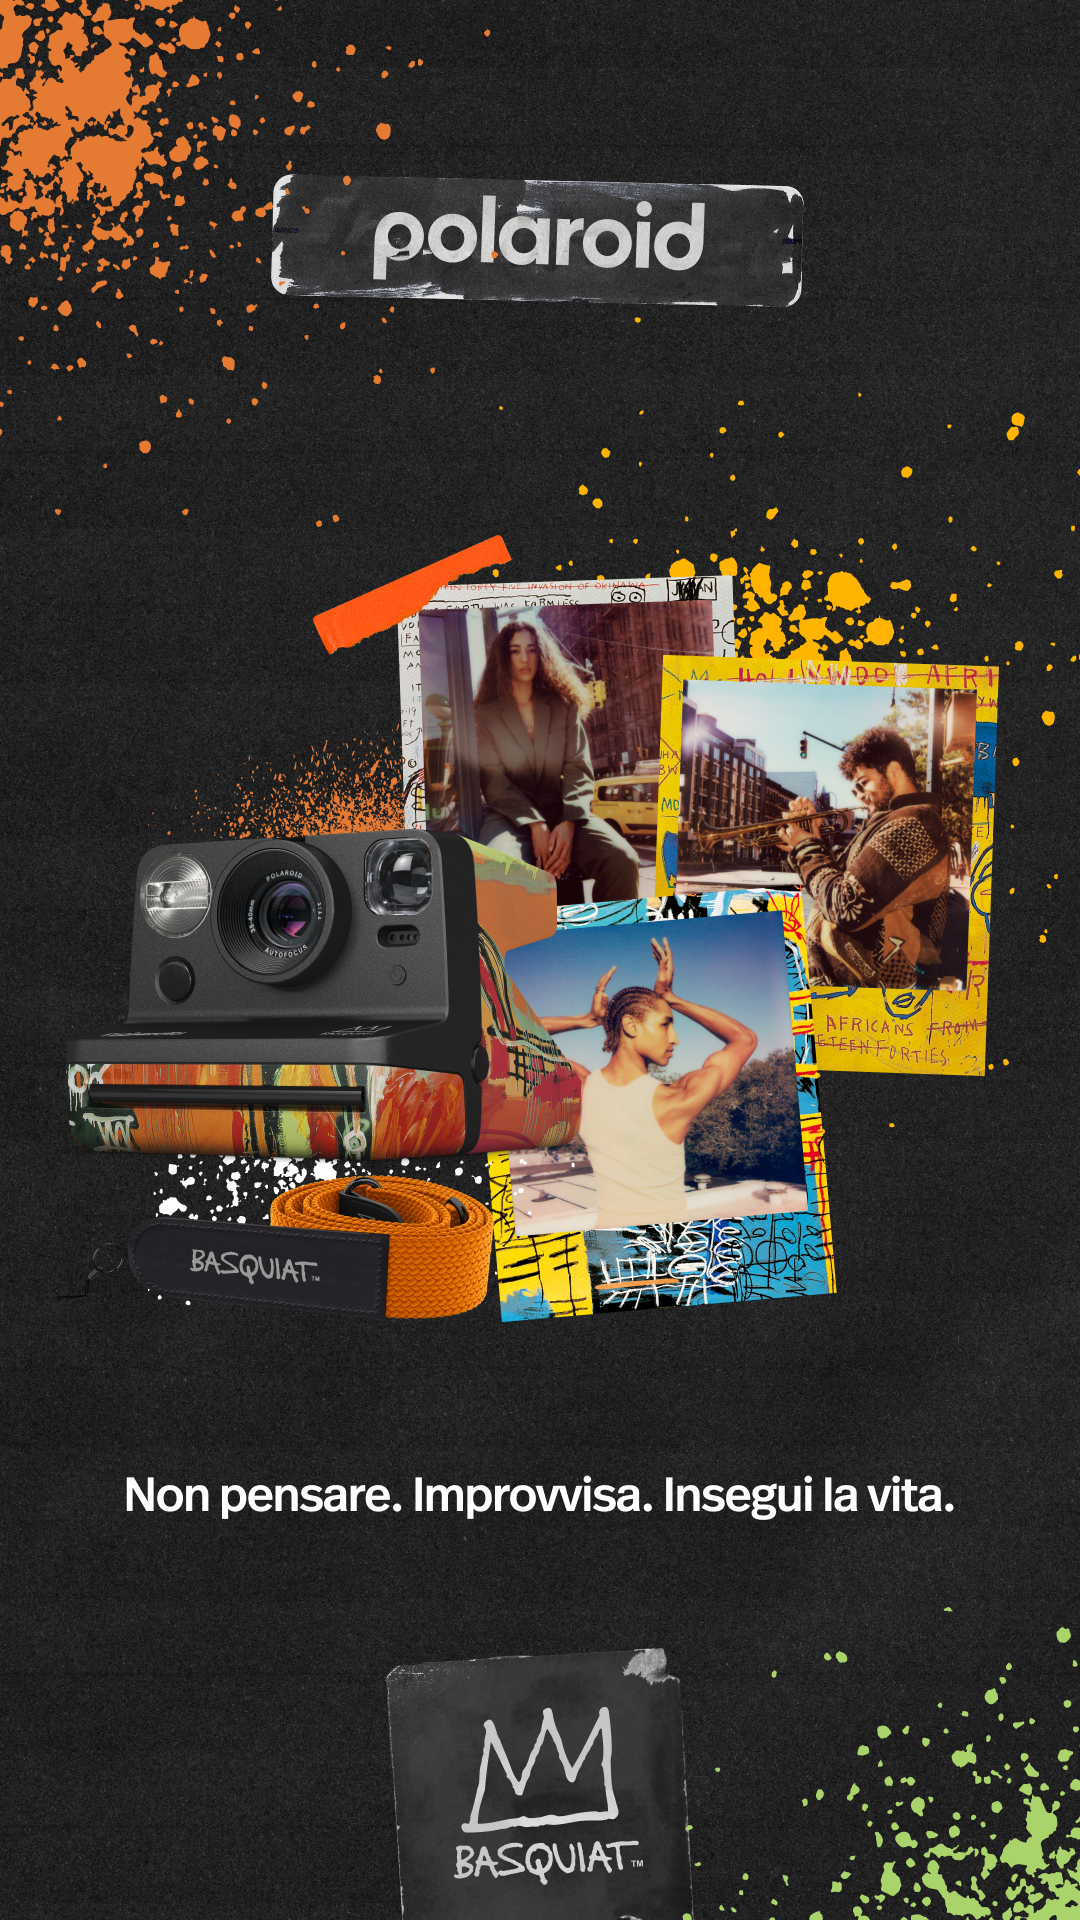 Polaroid NOW Basquiat Limited Edition  - Cine Sud è da 48 anni sul mercato! - PZ9137